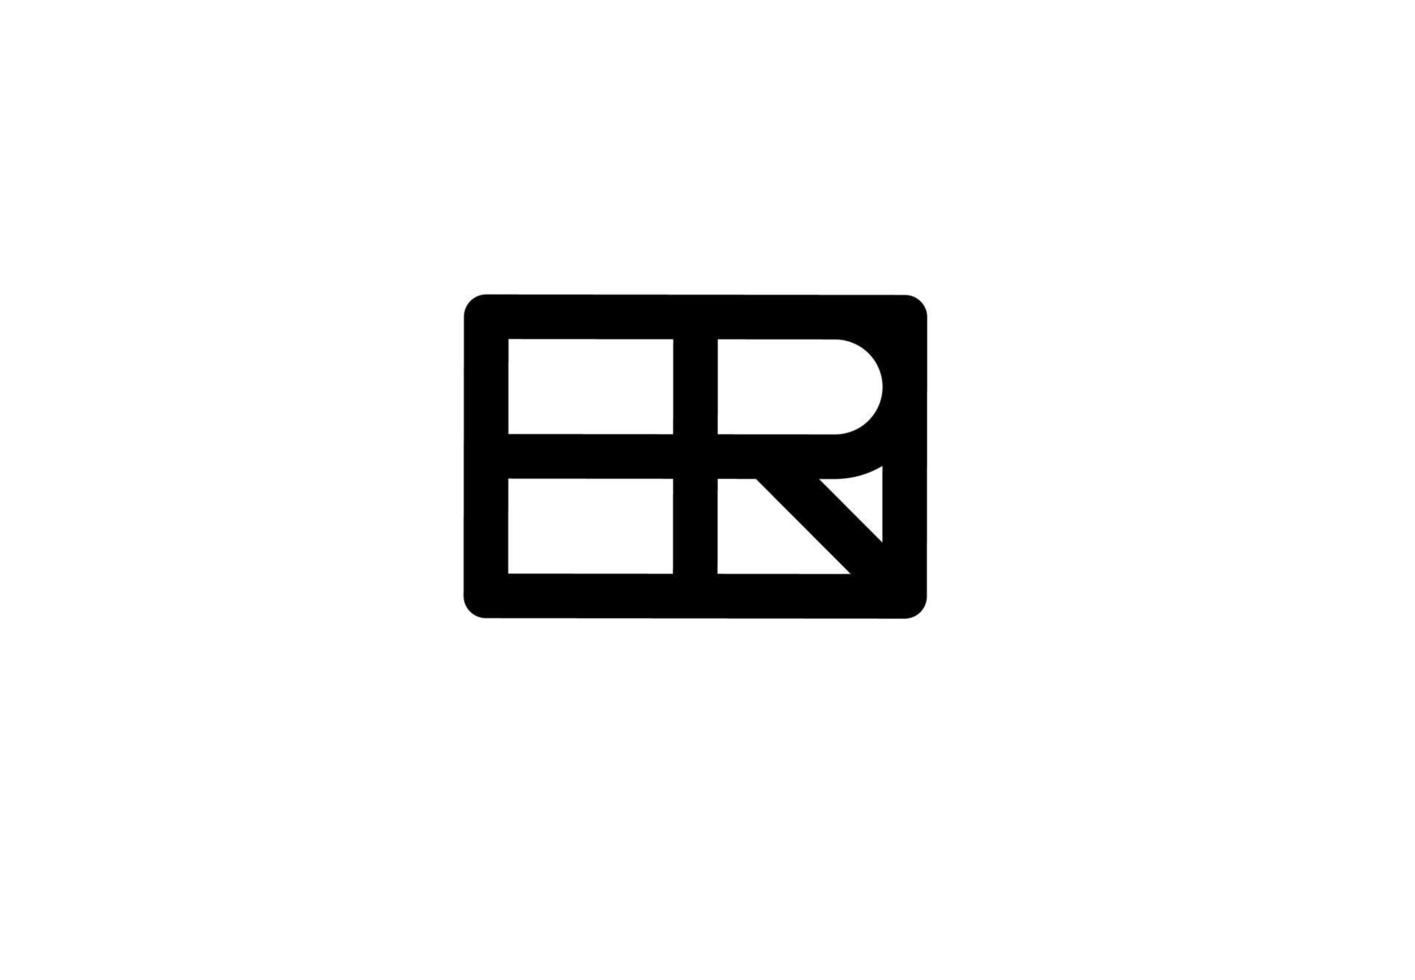 hr rh eh eh logotipo de letra inicial aislado sobre fondo blanco vector